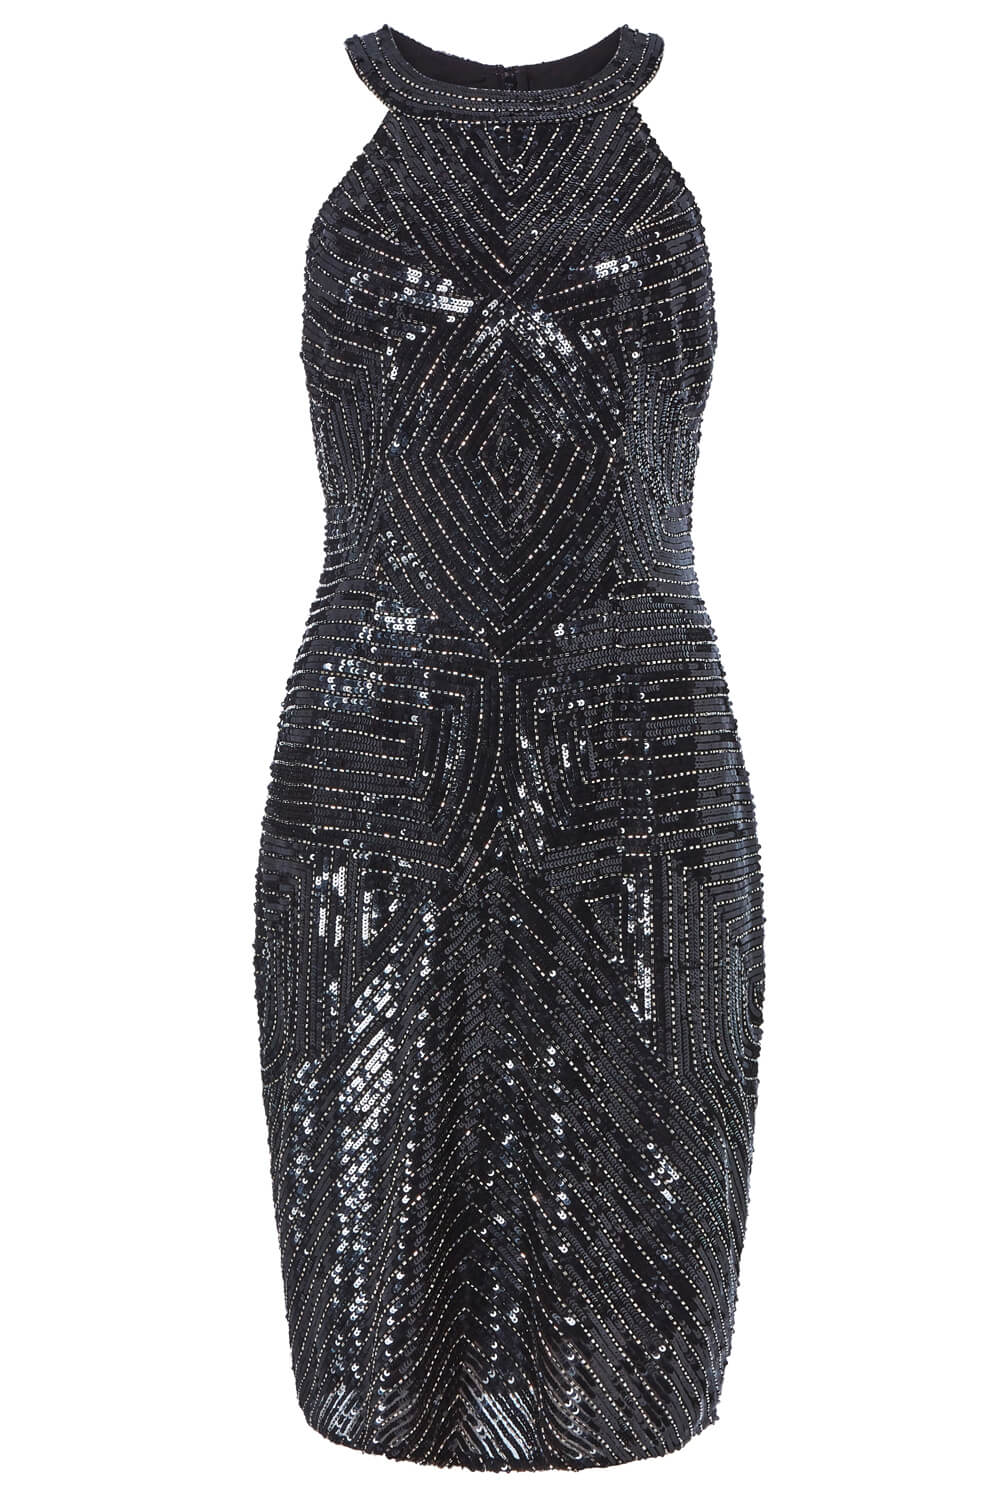 Black Embellished Halter Neck Fitted Mini Dress, Image 5 of 5